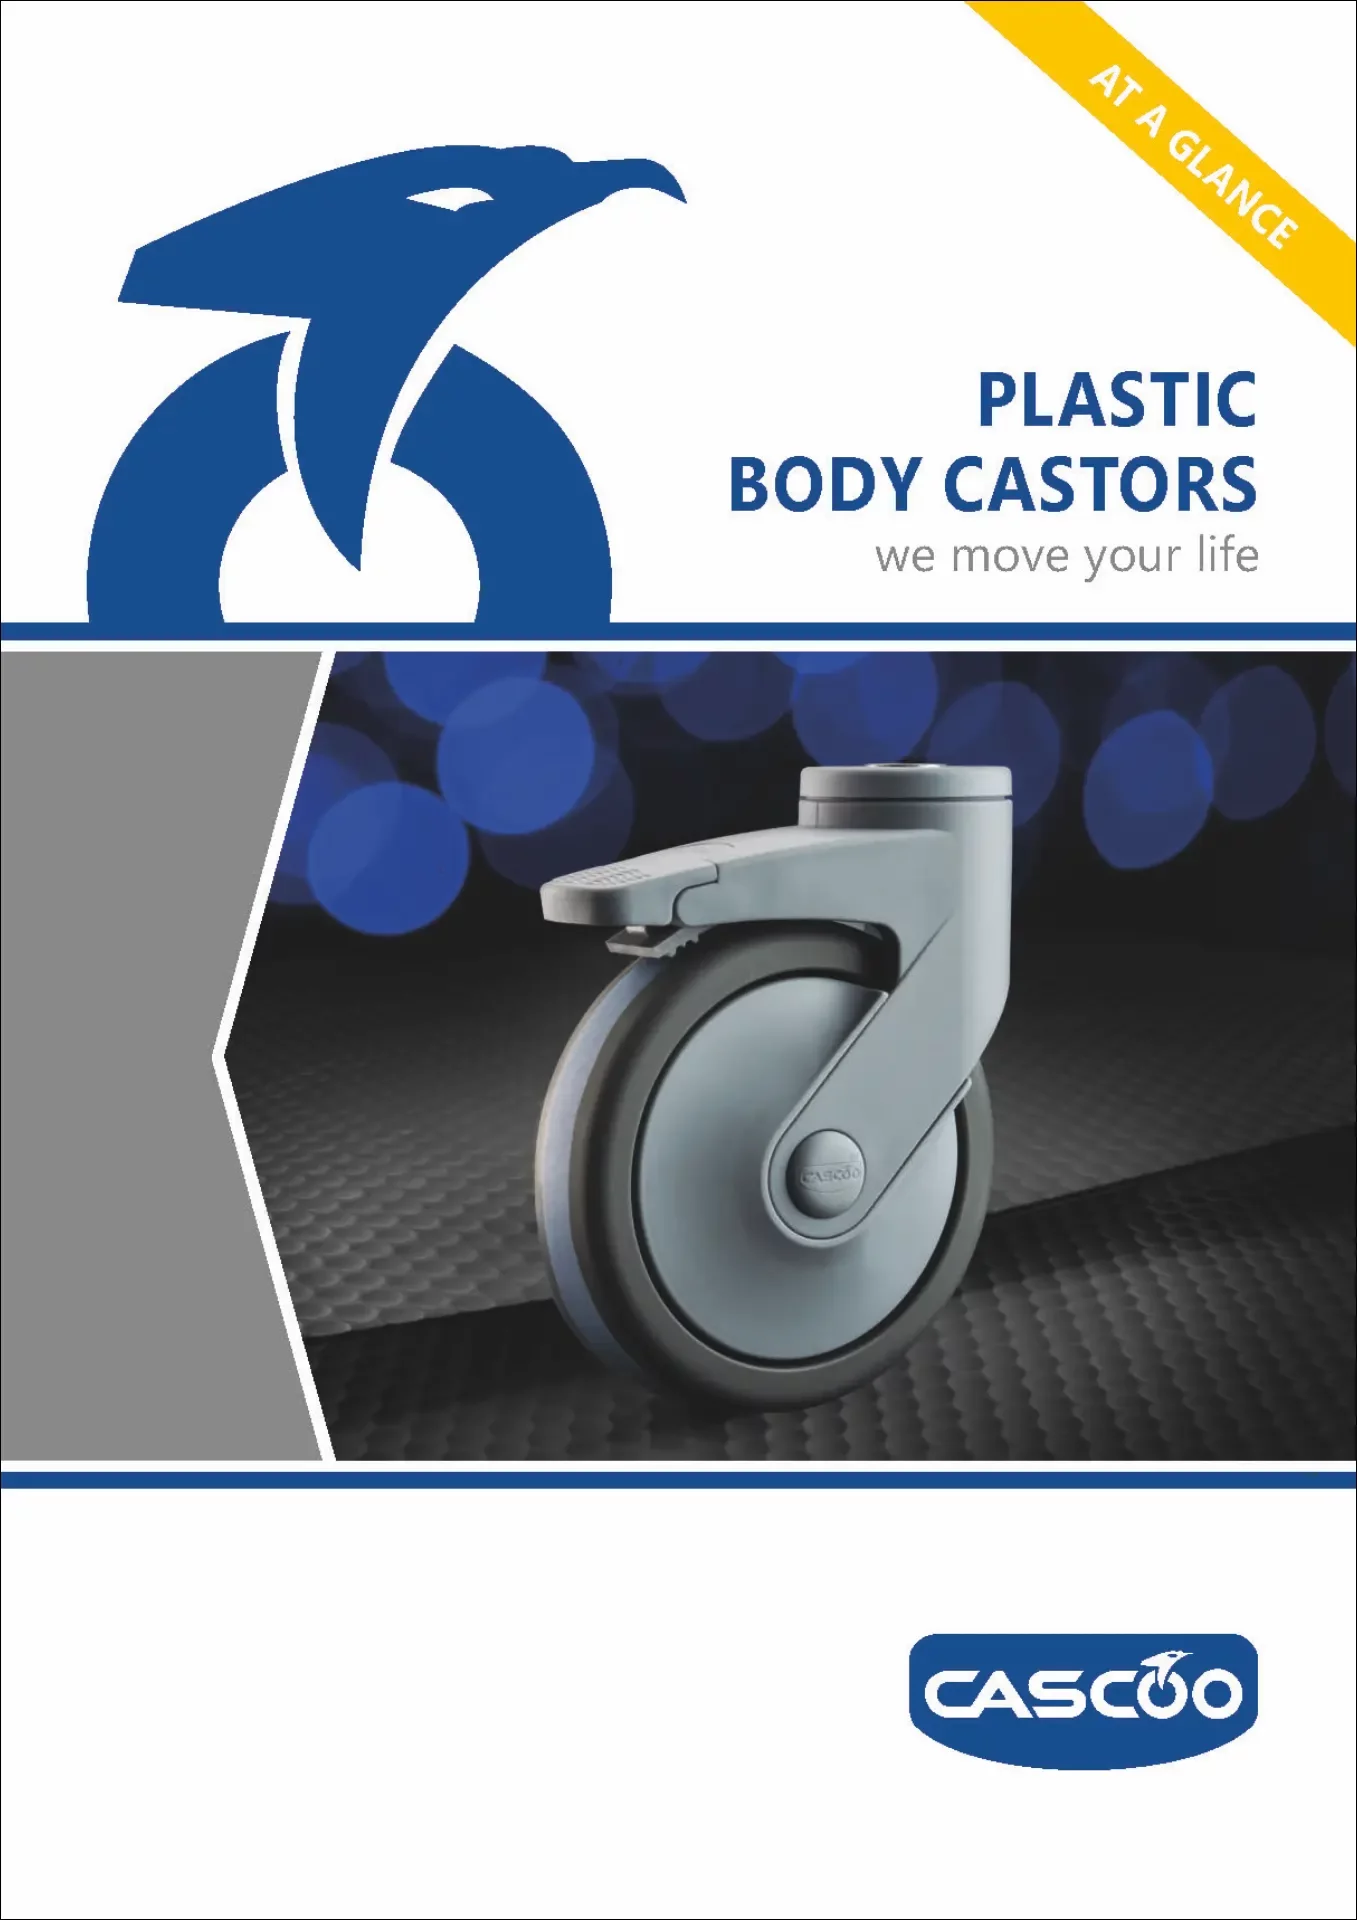 CASCOO EN Plastic Body Castors